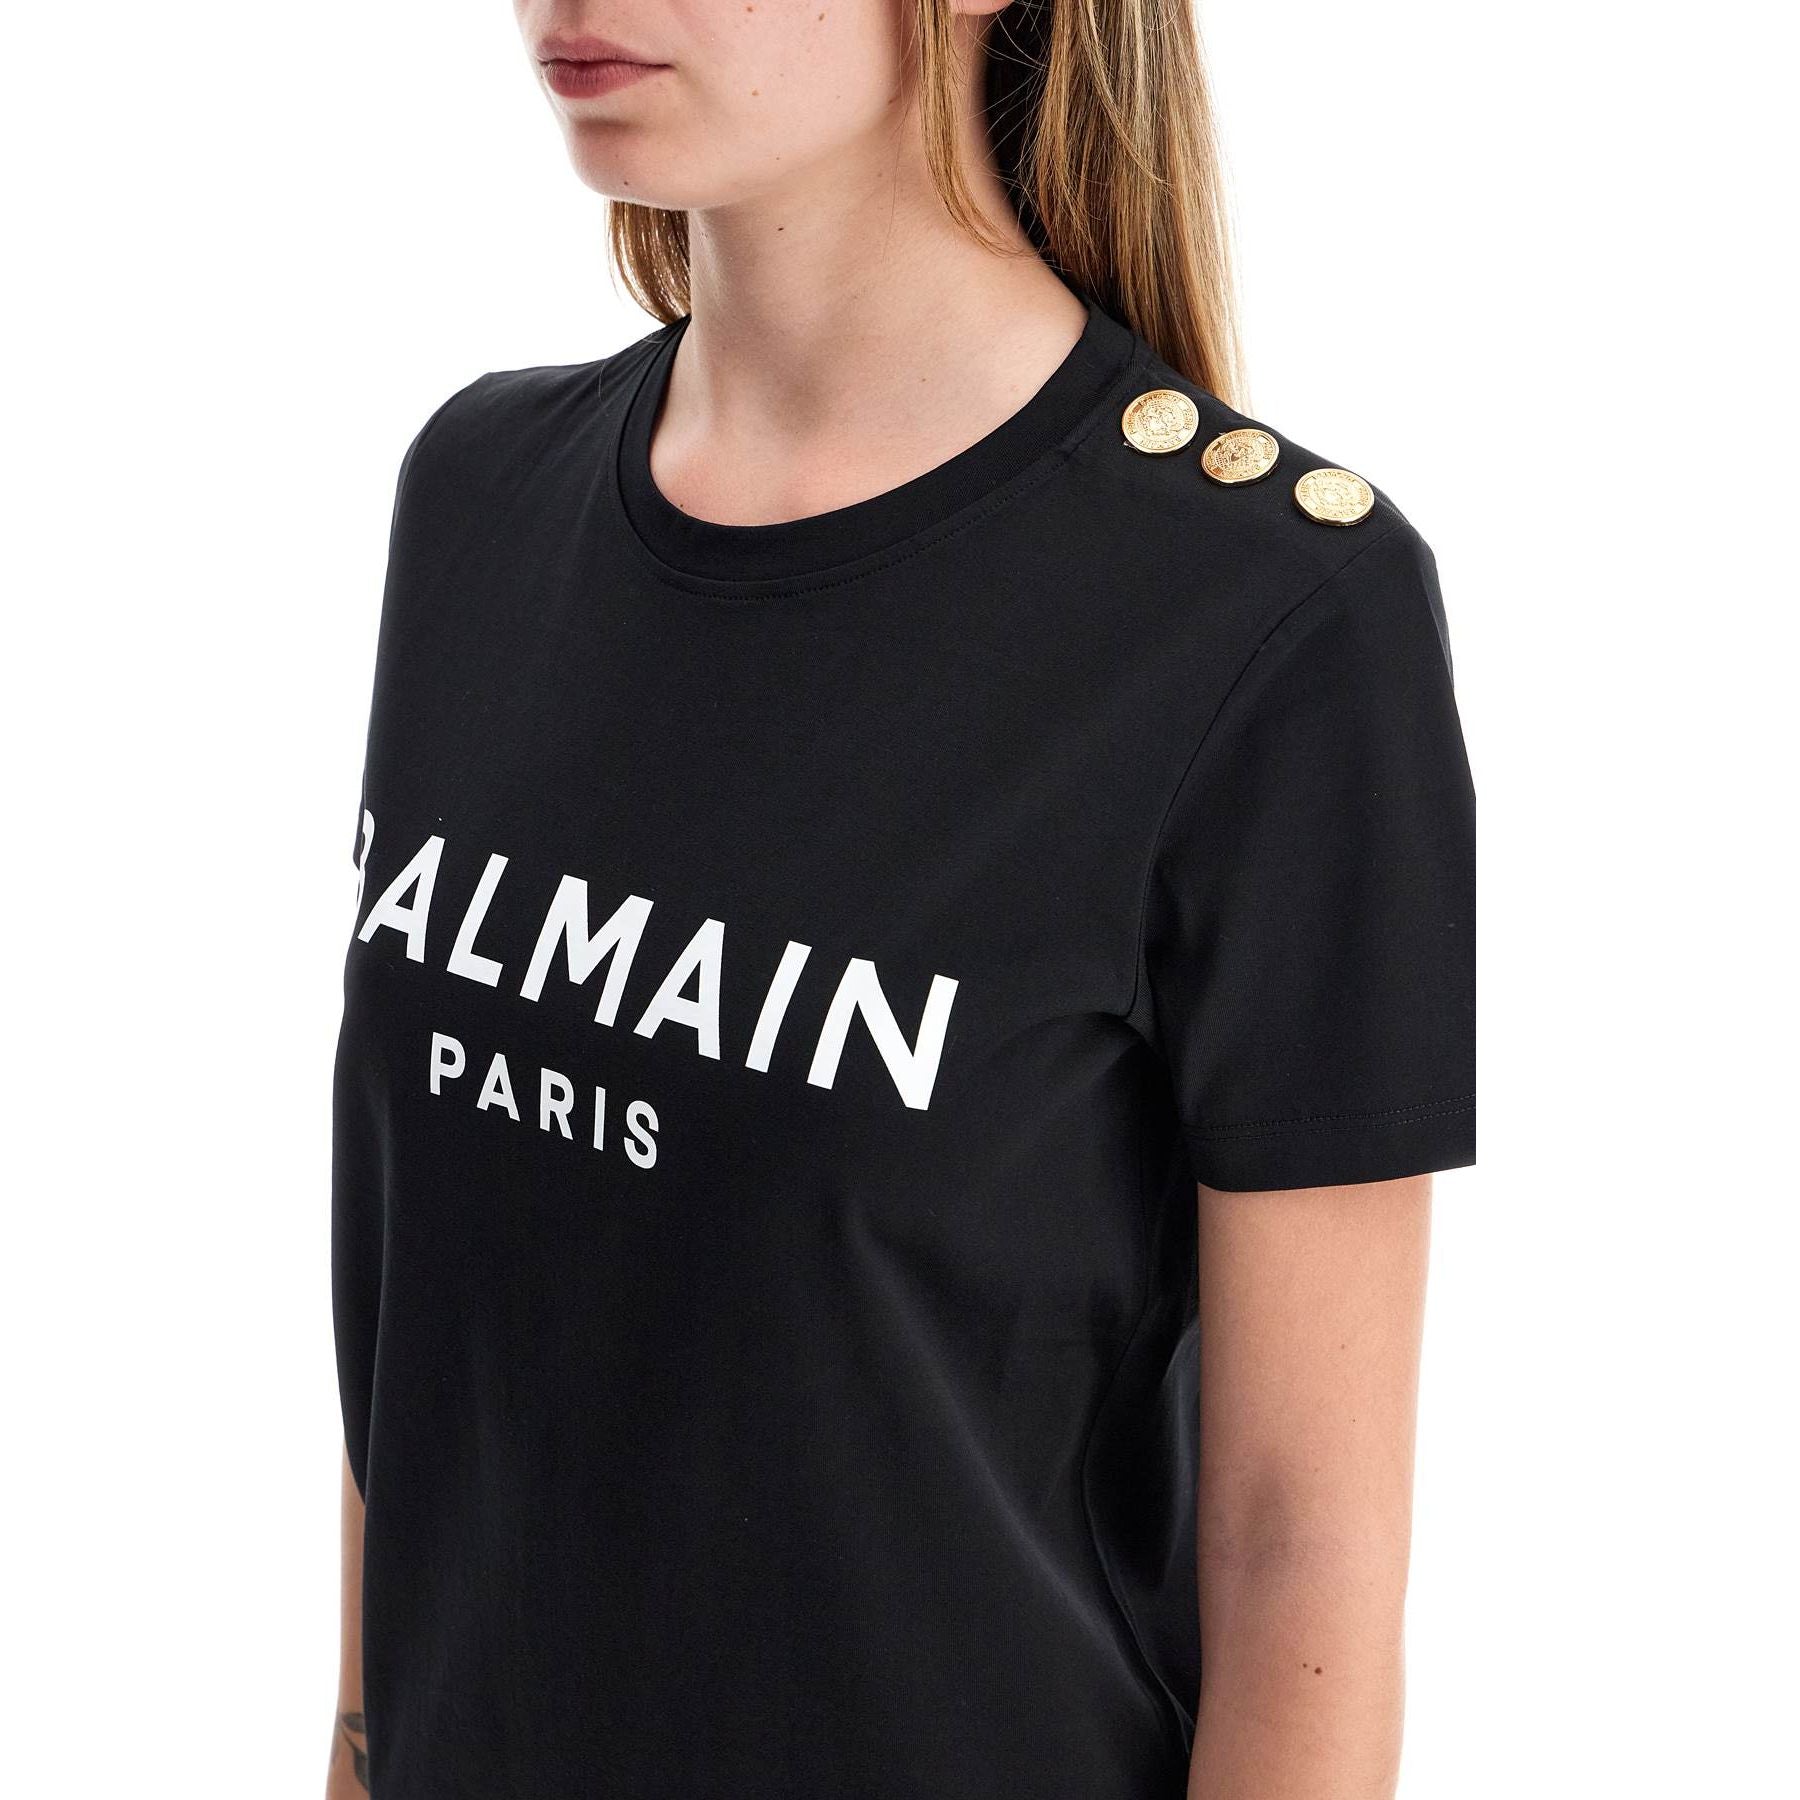 Organic Cotton Balmain Paris Print T-Shirt